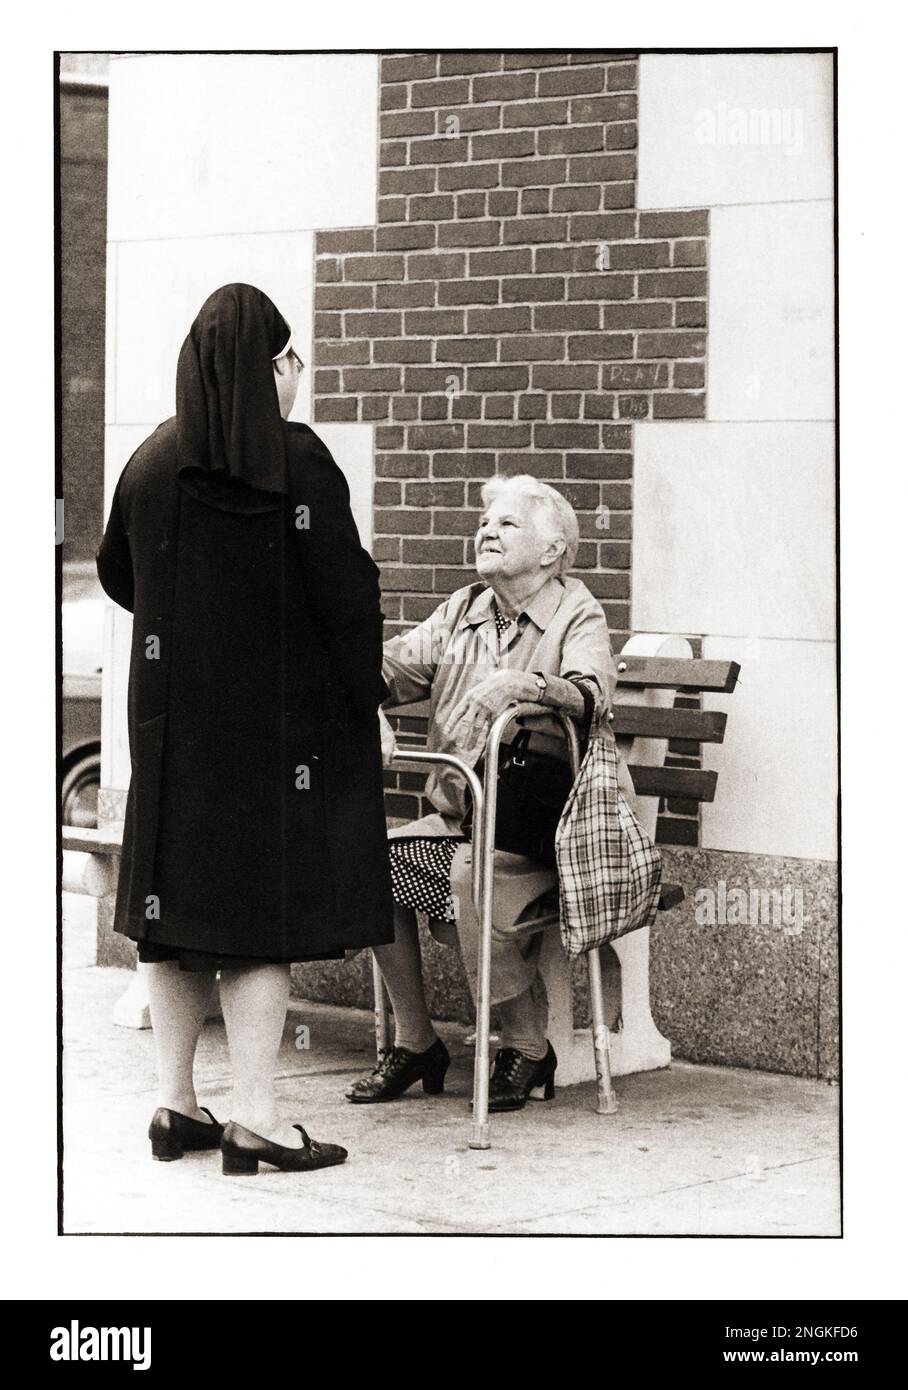 Eine Nonne hält an, um sich mit einer älteren Frau vor einem Gebäude zu unterhalten, dessen Ziegel die Form eines Kruzifix bilden. Auf der Seventh Avenue in Park Slope, Brooklyn, New York. Etwa Ende 190s. Stockfoto